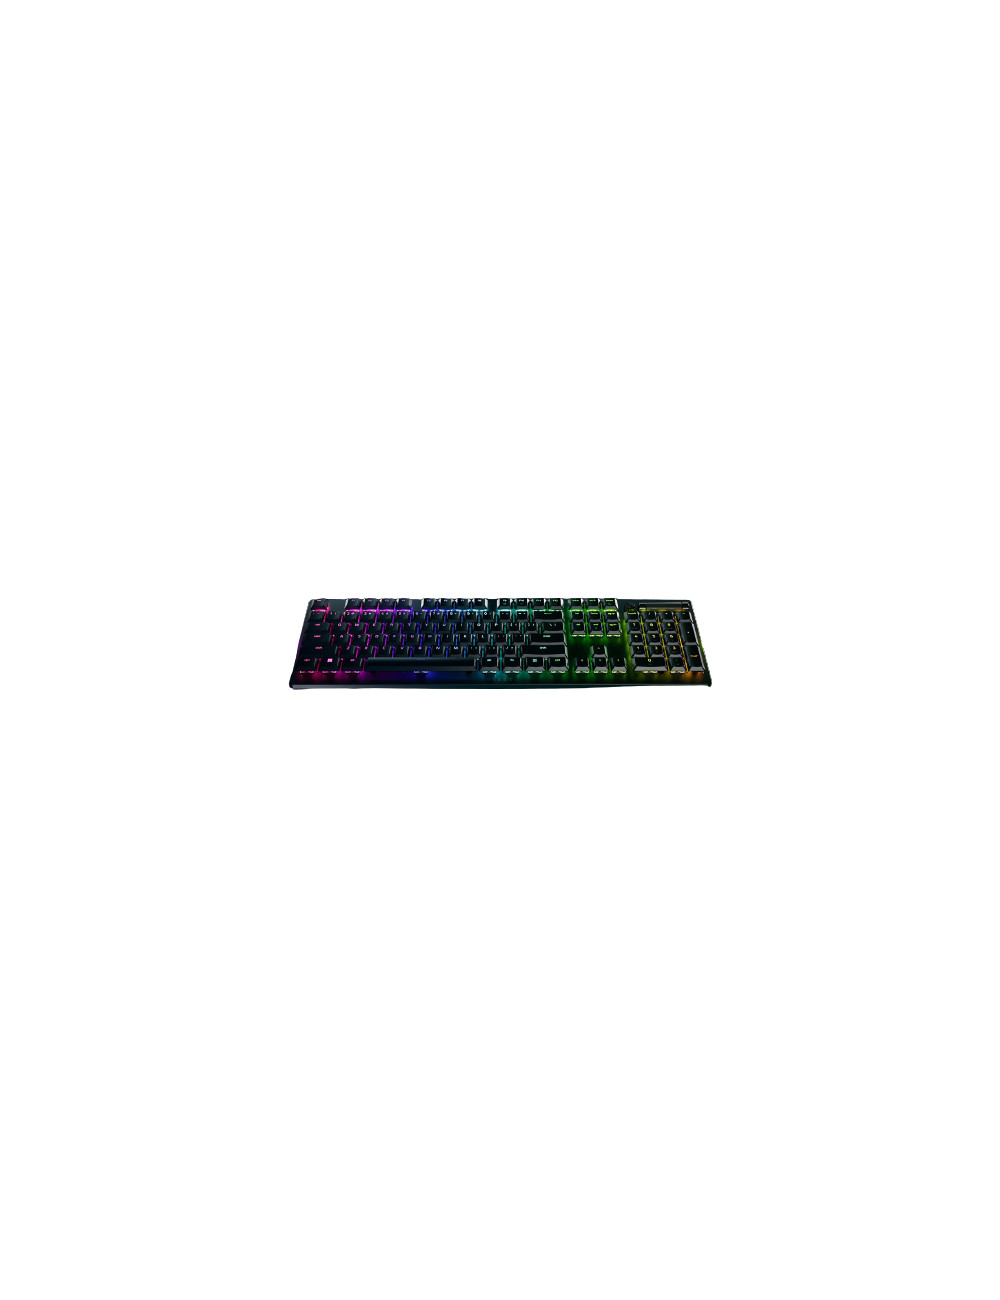 Razer Optical Keyboard Deathstalker V2 Pro RGB LED light, US